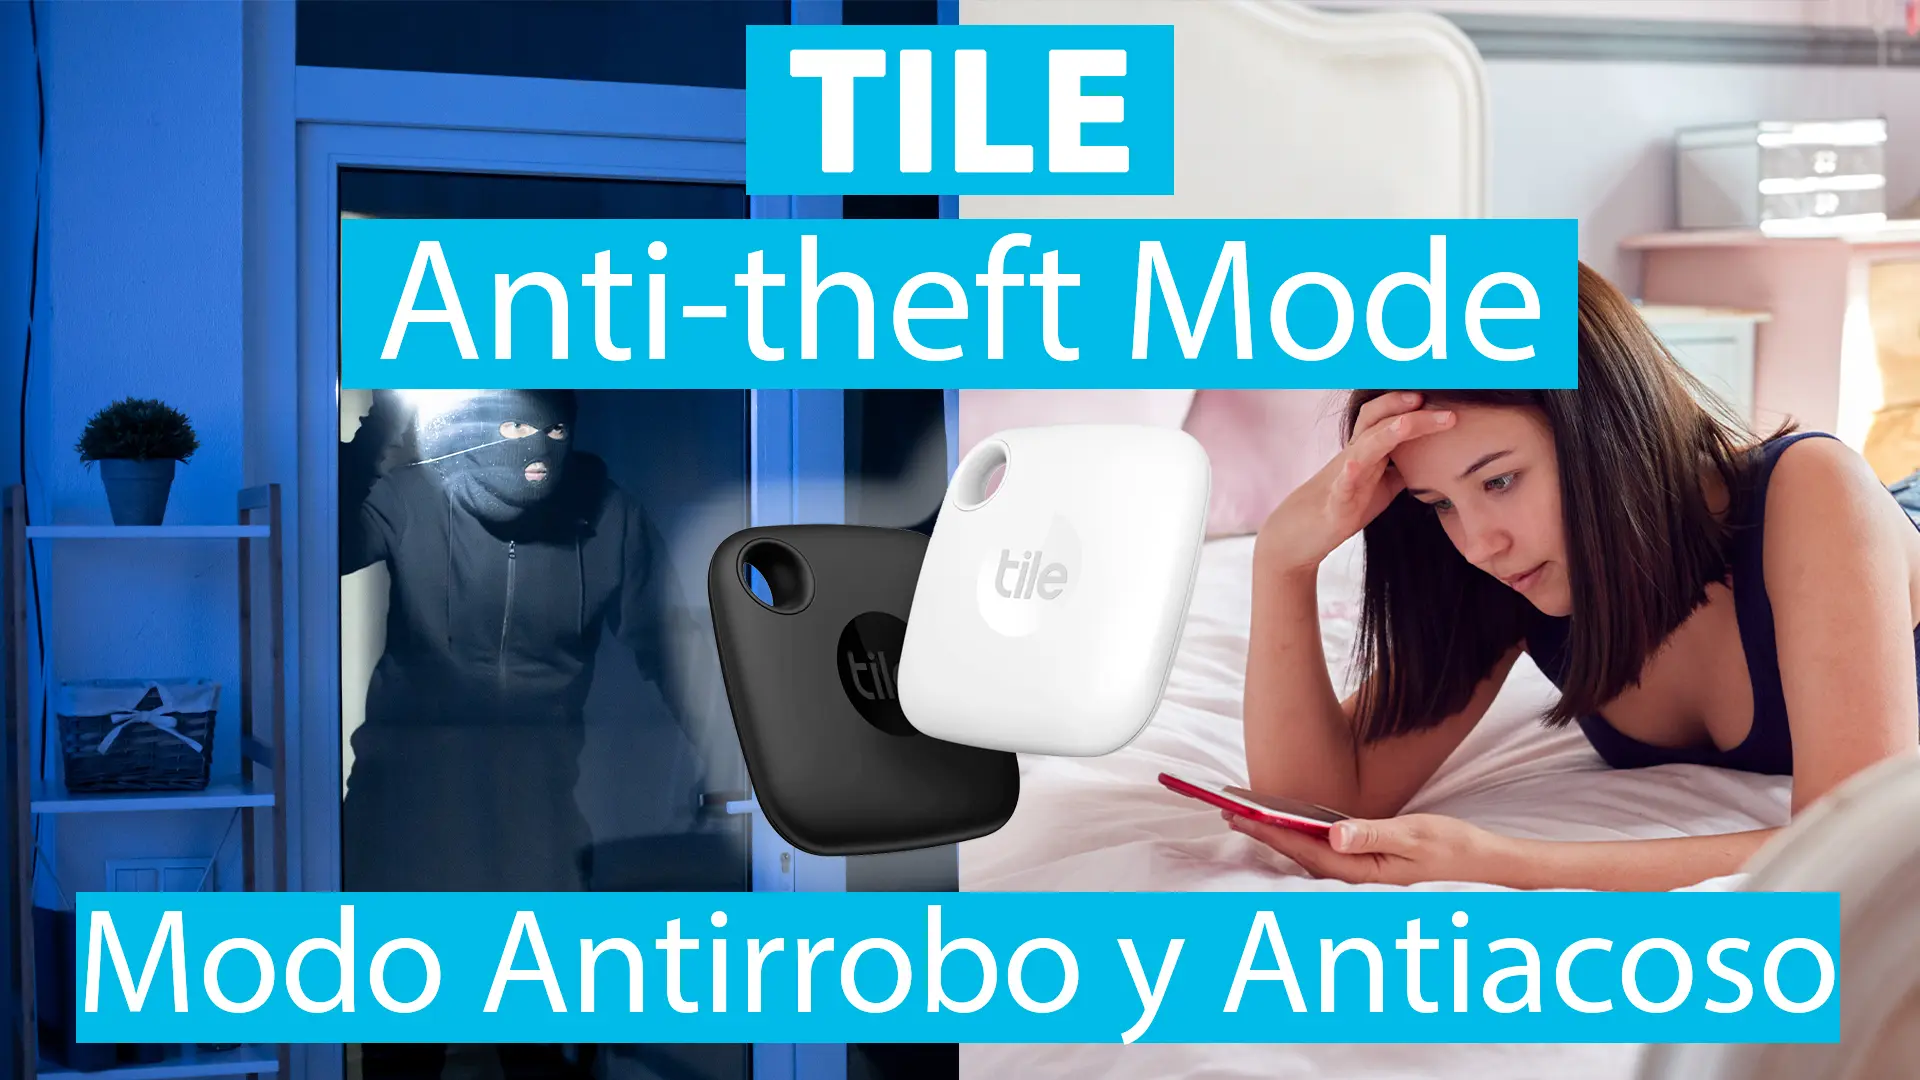 Tile con el Modo Antirrobo (Anti-theft Mode) ya combate el acoso y robo